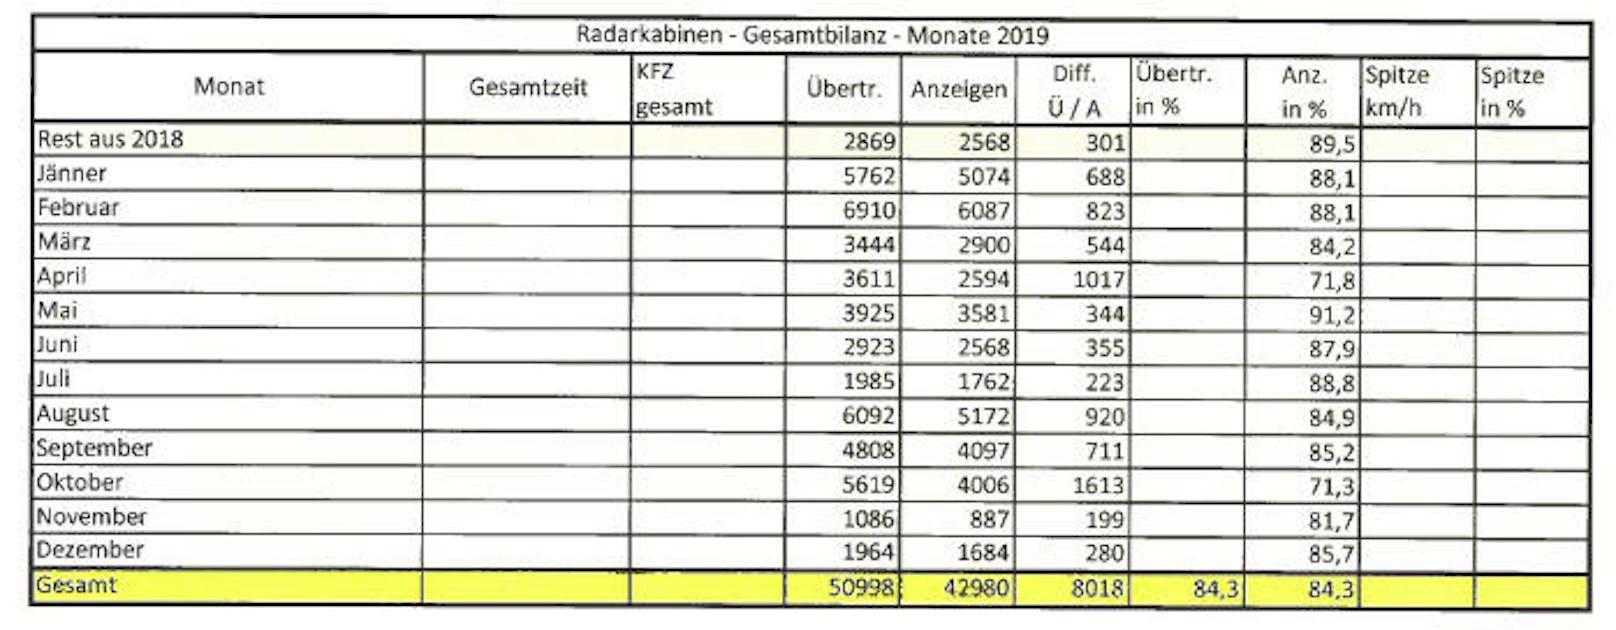 Diese Statistik zeigt, in welchen Monaten es in Linz wieviele Radar-Anzeigen gegeben hat.